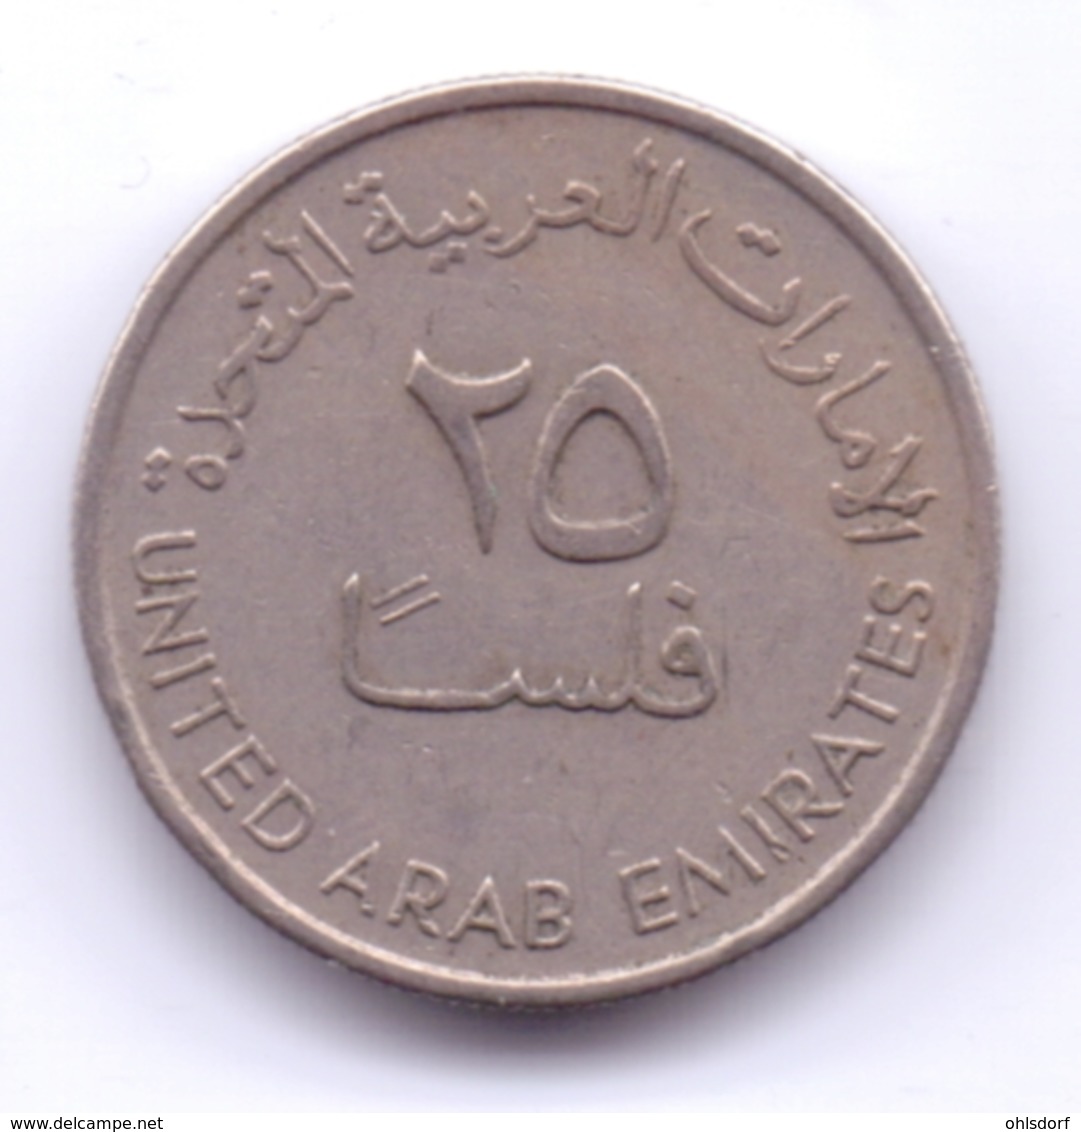 UNITED ARAB EMIRATES 1973: 25 Fils, KM 4 - Emirats Arabes Unis